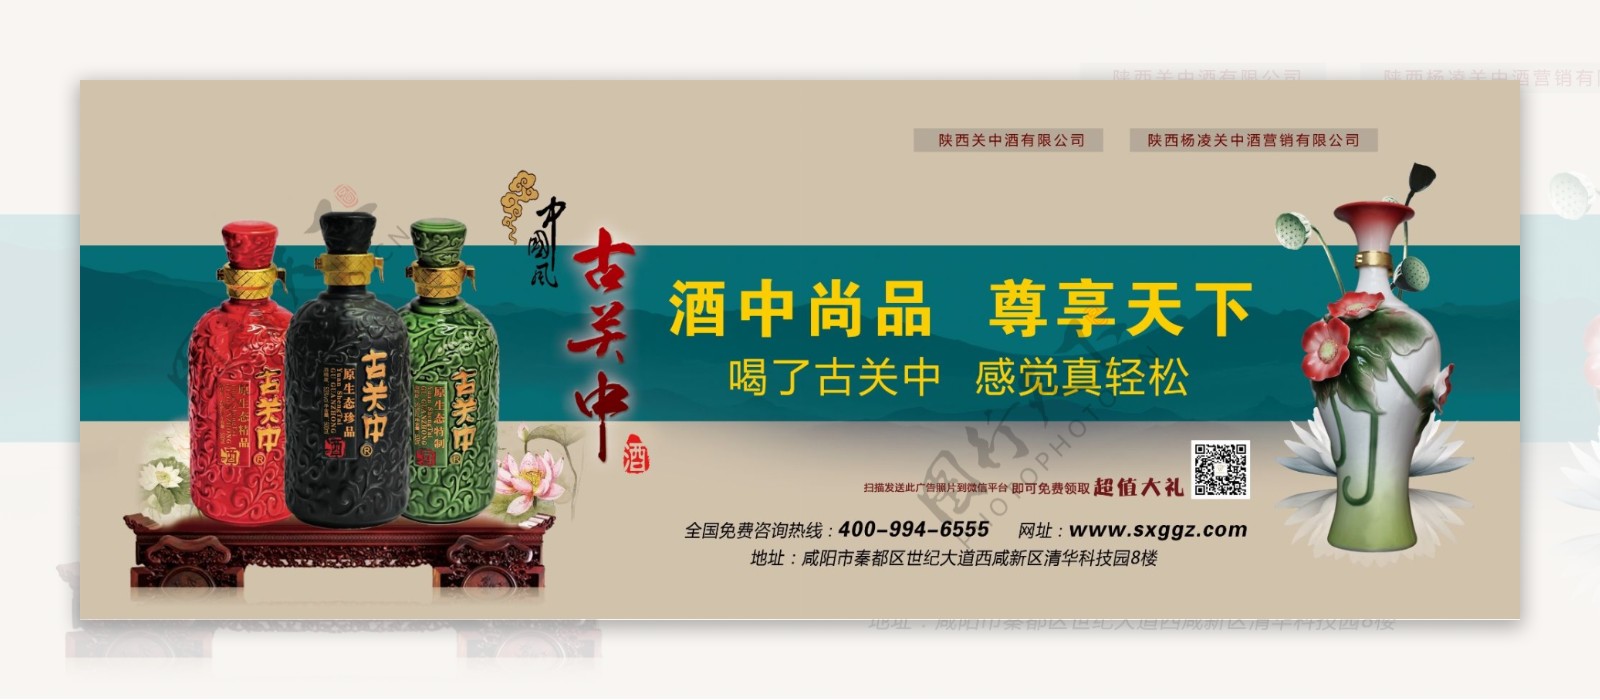 中国风白酒社区广告图片